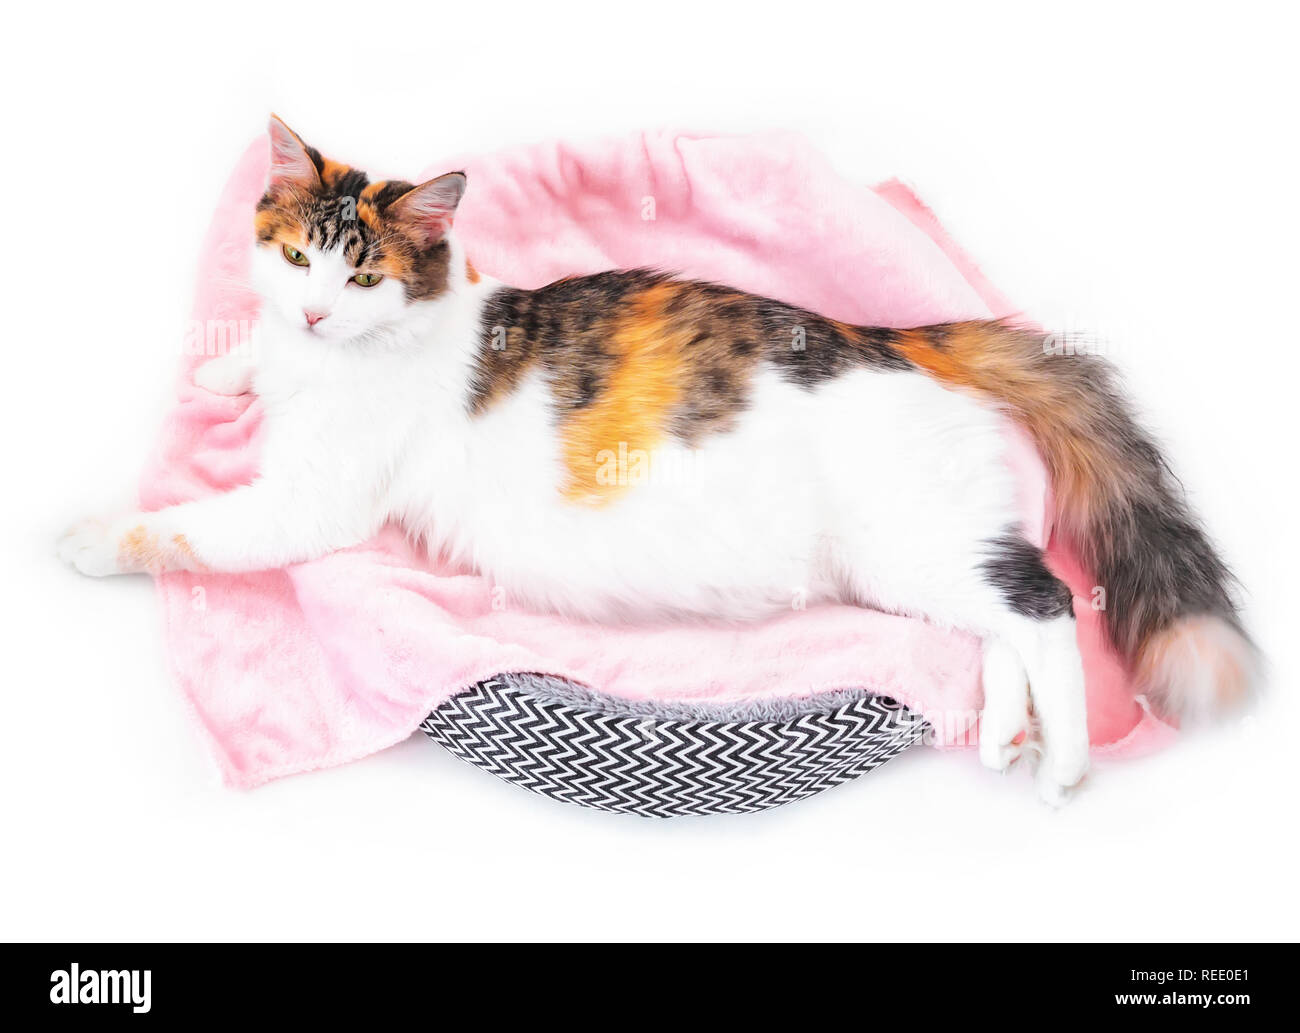 Cat la gravidanza. Gravidanza Gatti calico con grande pancia deposizione sul tessuto rosa guardando la fotocamera. Isolato sfondo bianco Foto Stock